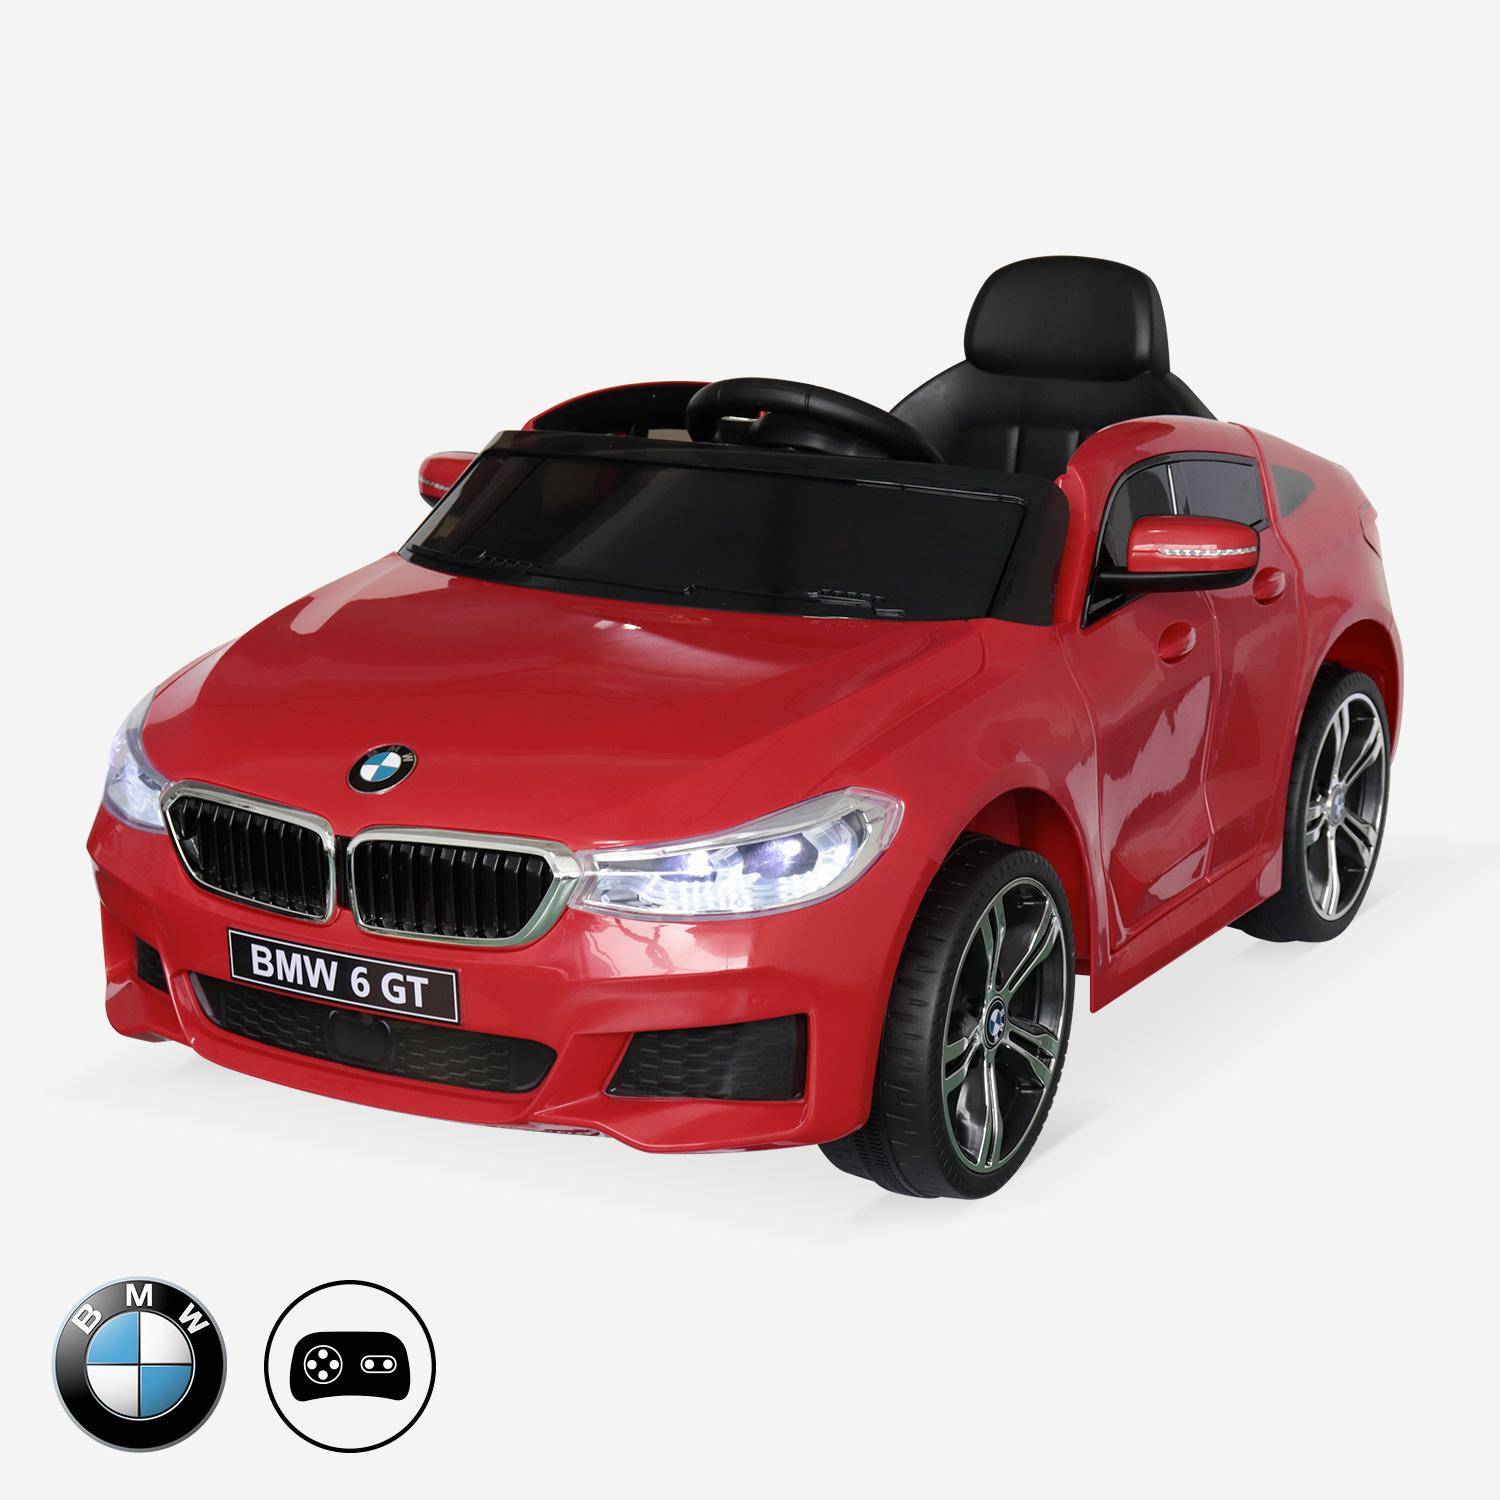 BMW Serie 6 GT Gran Turismo rossa, macchina elettrica per bambini 12V 4 Ah, 1 posto, con autoradio e telecomando Photo1